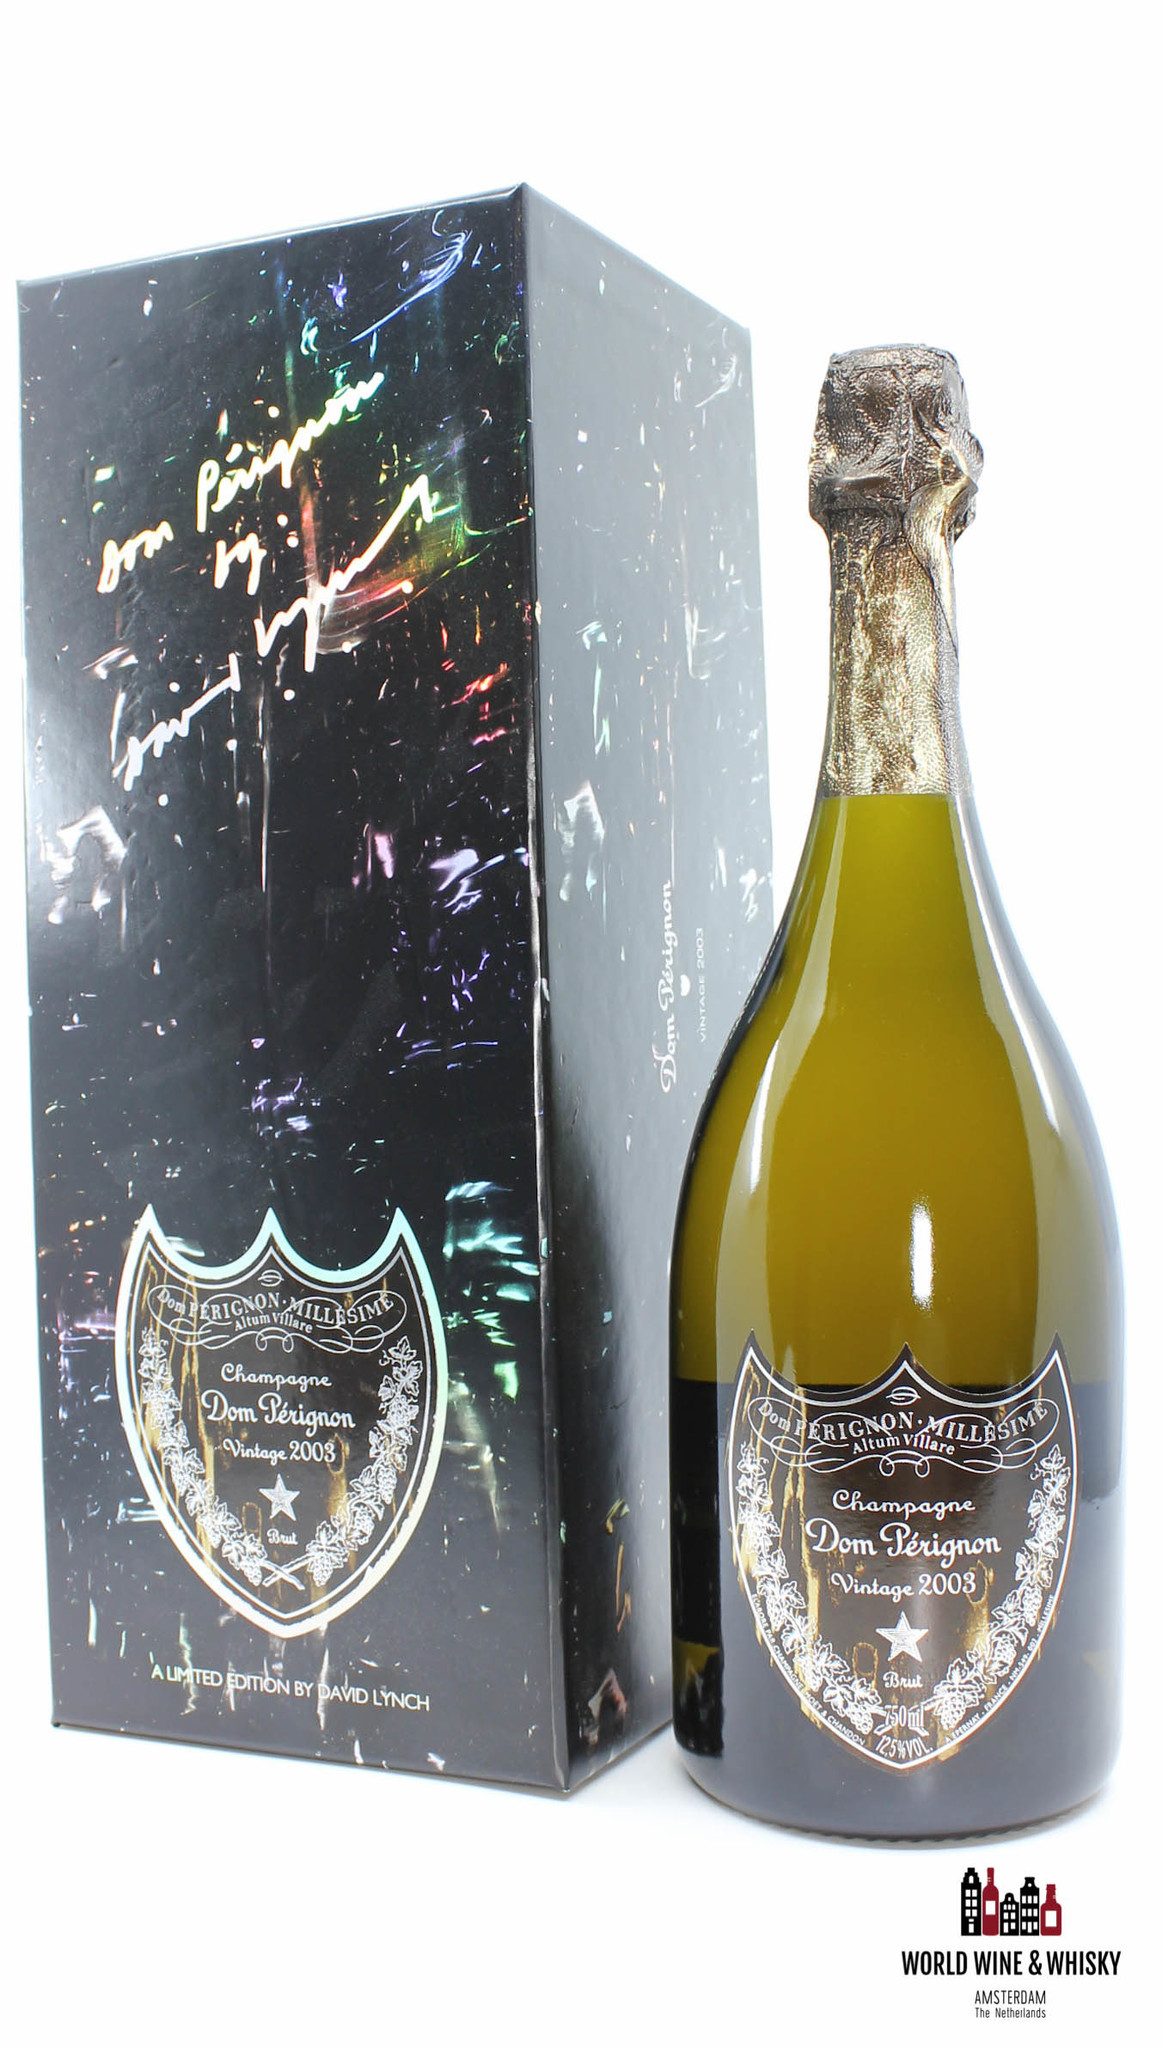 Dom Perignon Dom Perignon 2003 Vintage Champagne Brut - Limited Edition by David Lynch